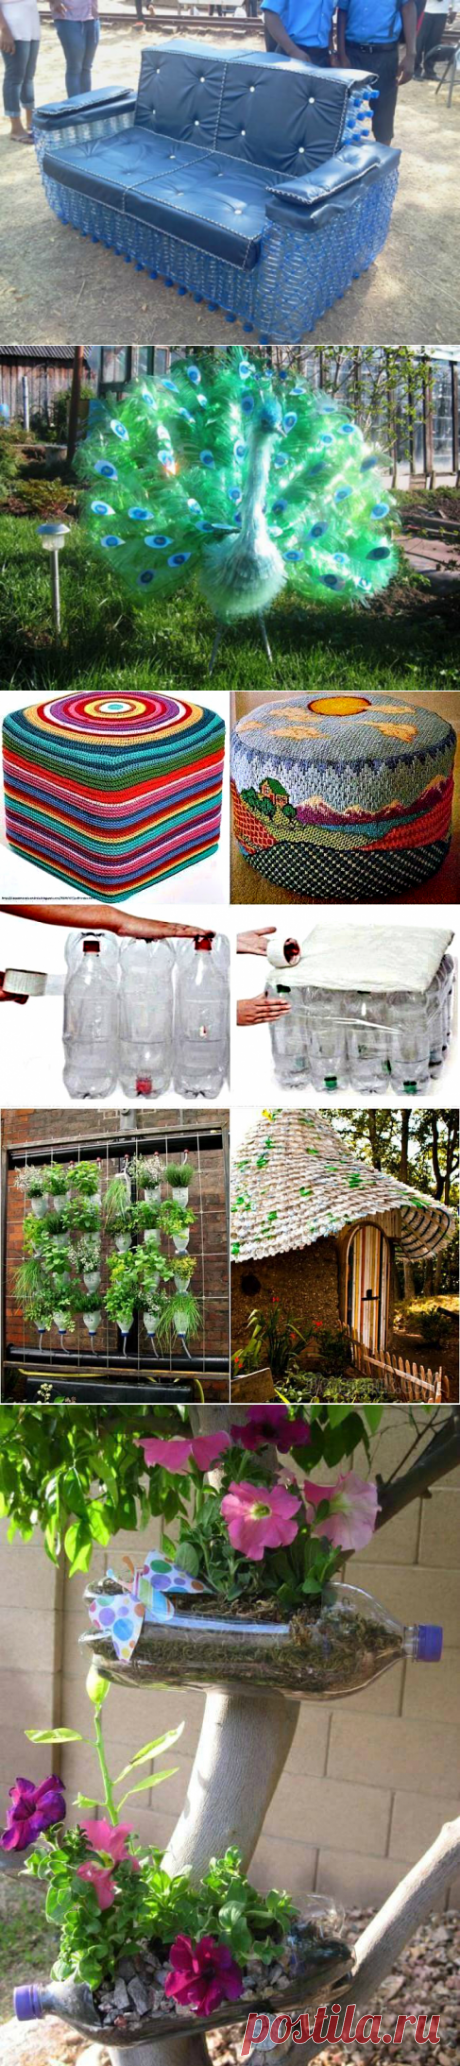 Грамотная утилизация: 17 красивых и полезных идей вторичного использования пластиковых бутылок